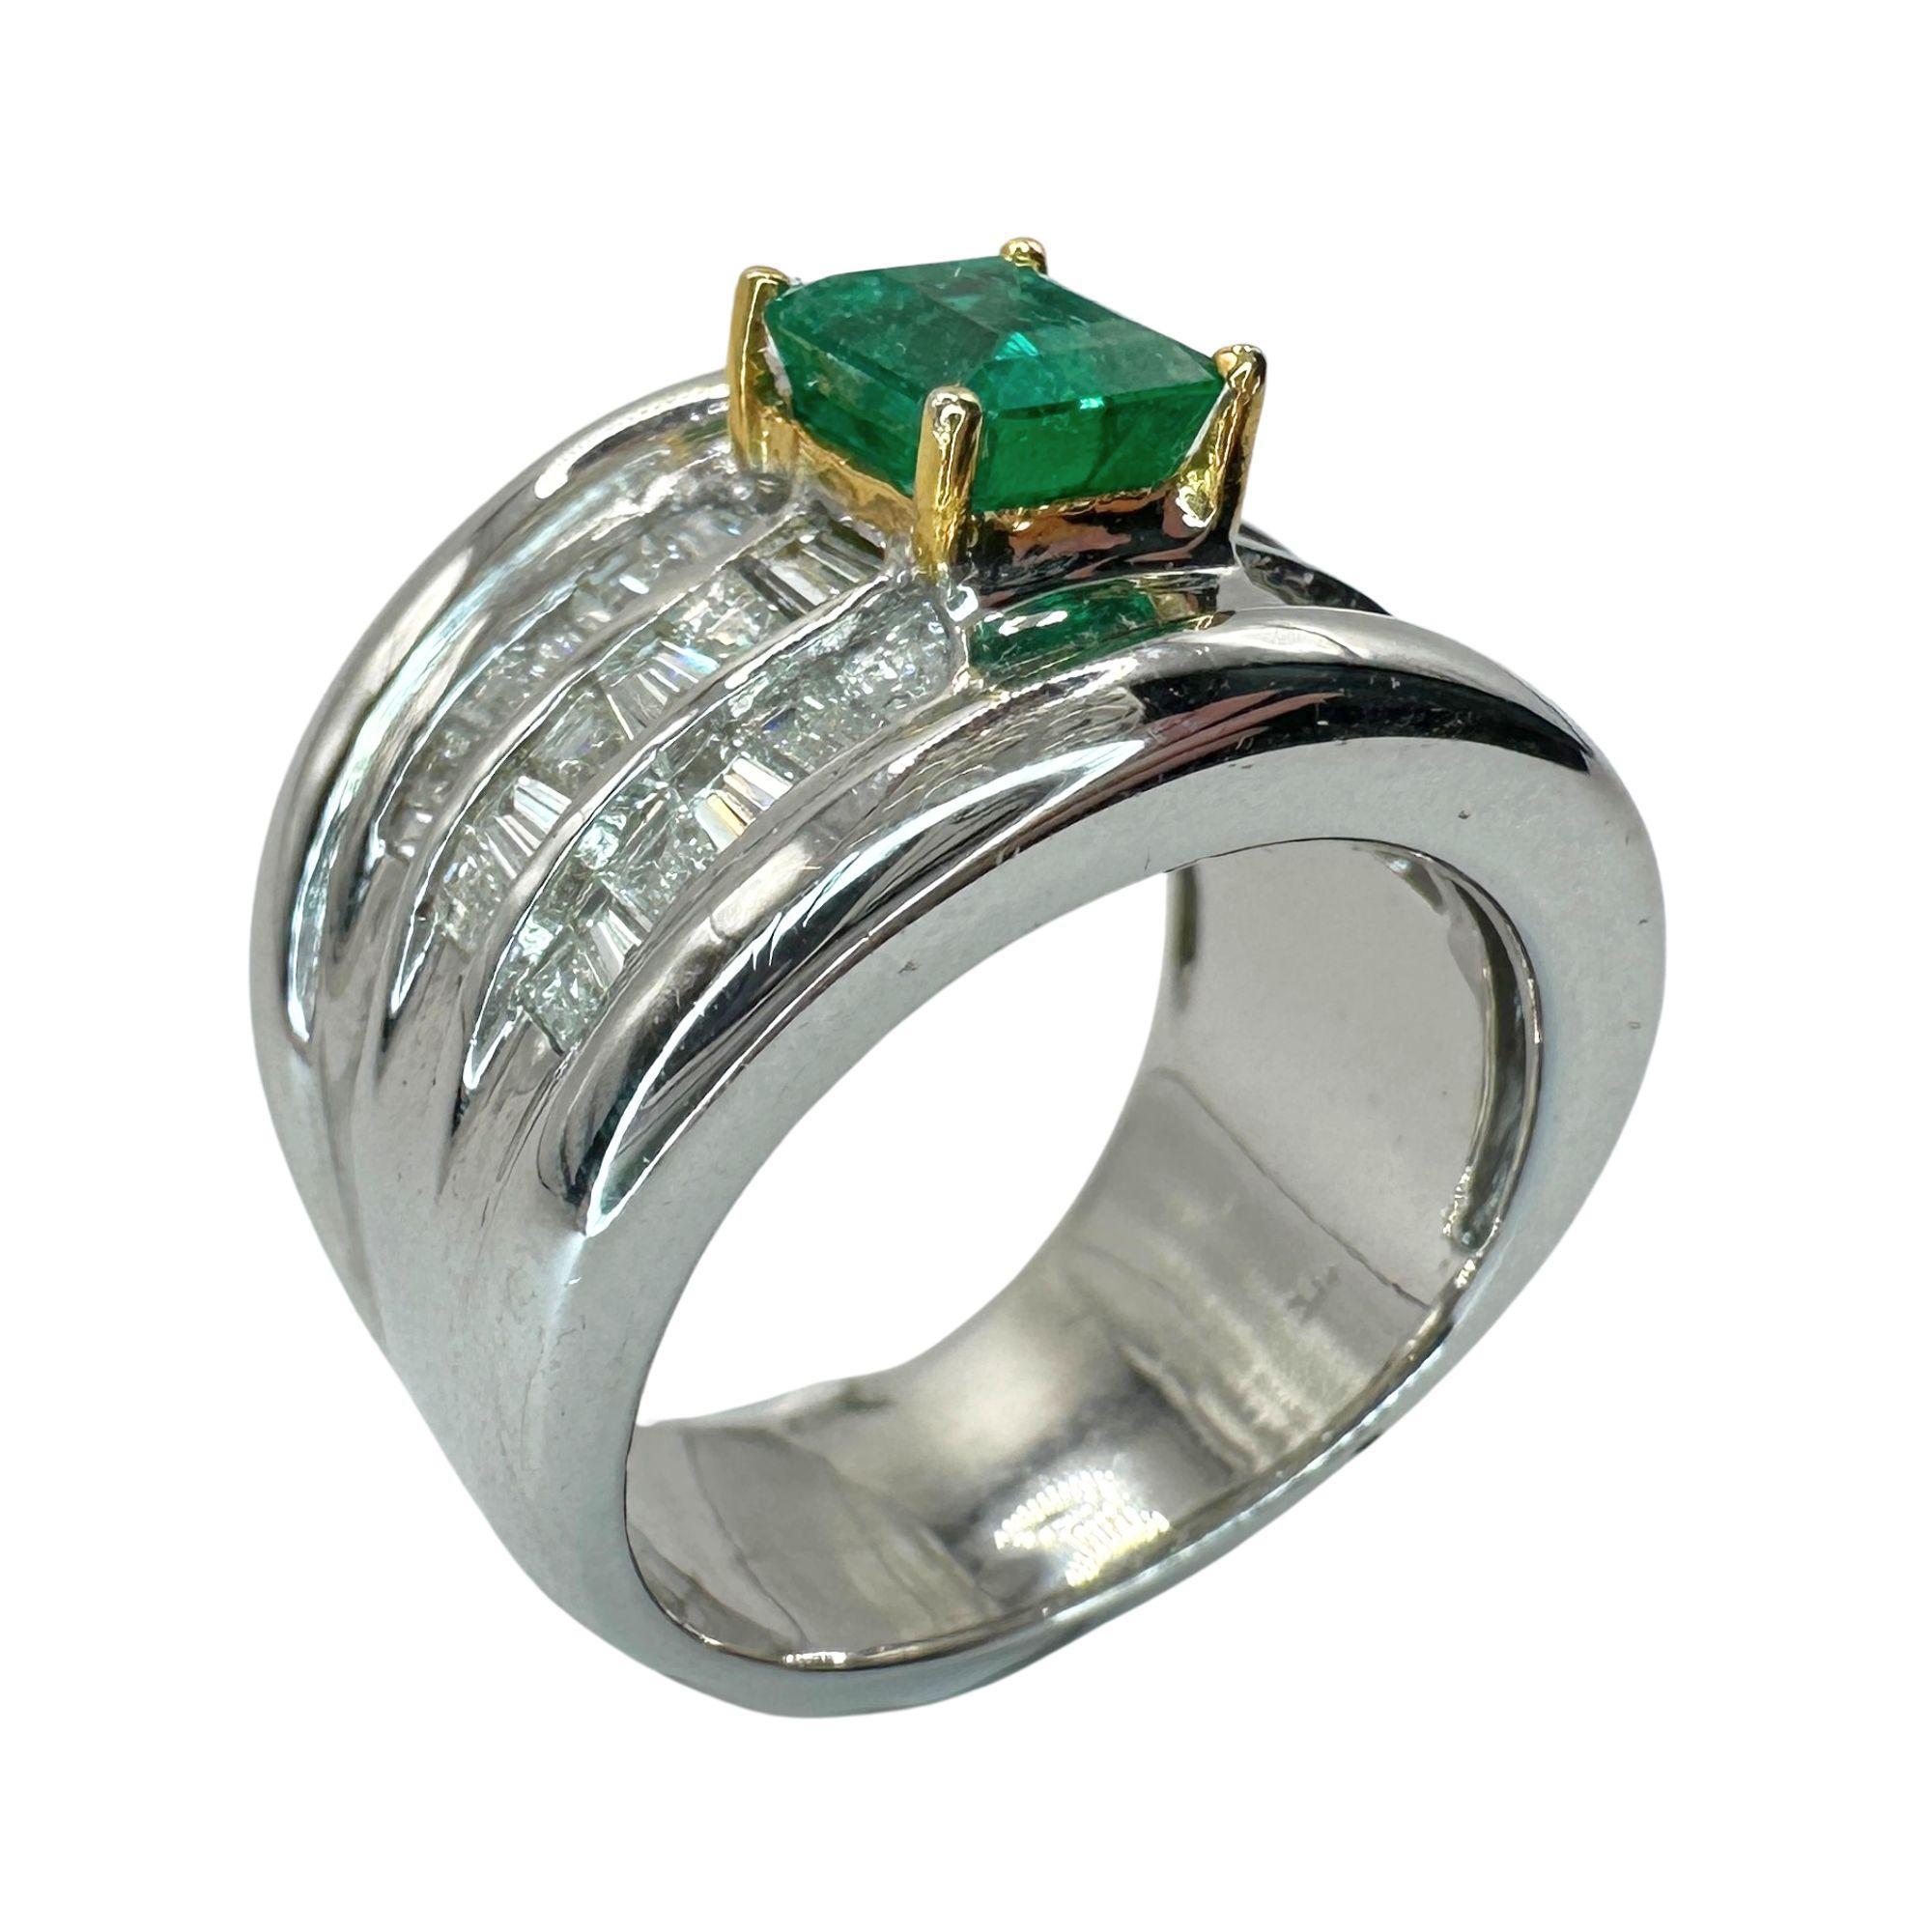 Gönnen Sie sich Luxus mit unserem schweren 18-karätigen Diamant- und Smaragdring mit breitem Band. Dieses exquisite Schmuckstück aus 18 Karat Weißgold ist mit seinen 1,26 Karat Diamanten und dem 0,93 Karat schweren Smaragd in der Mitte ein wahres